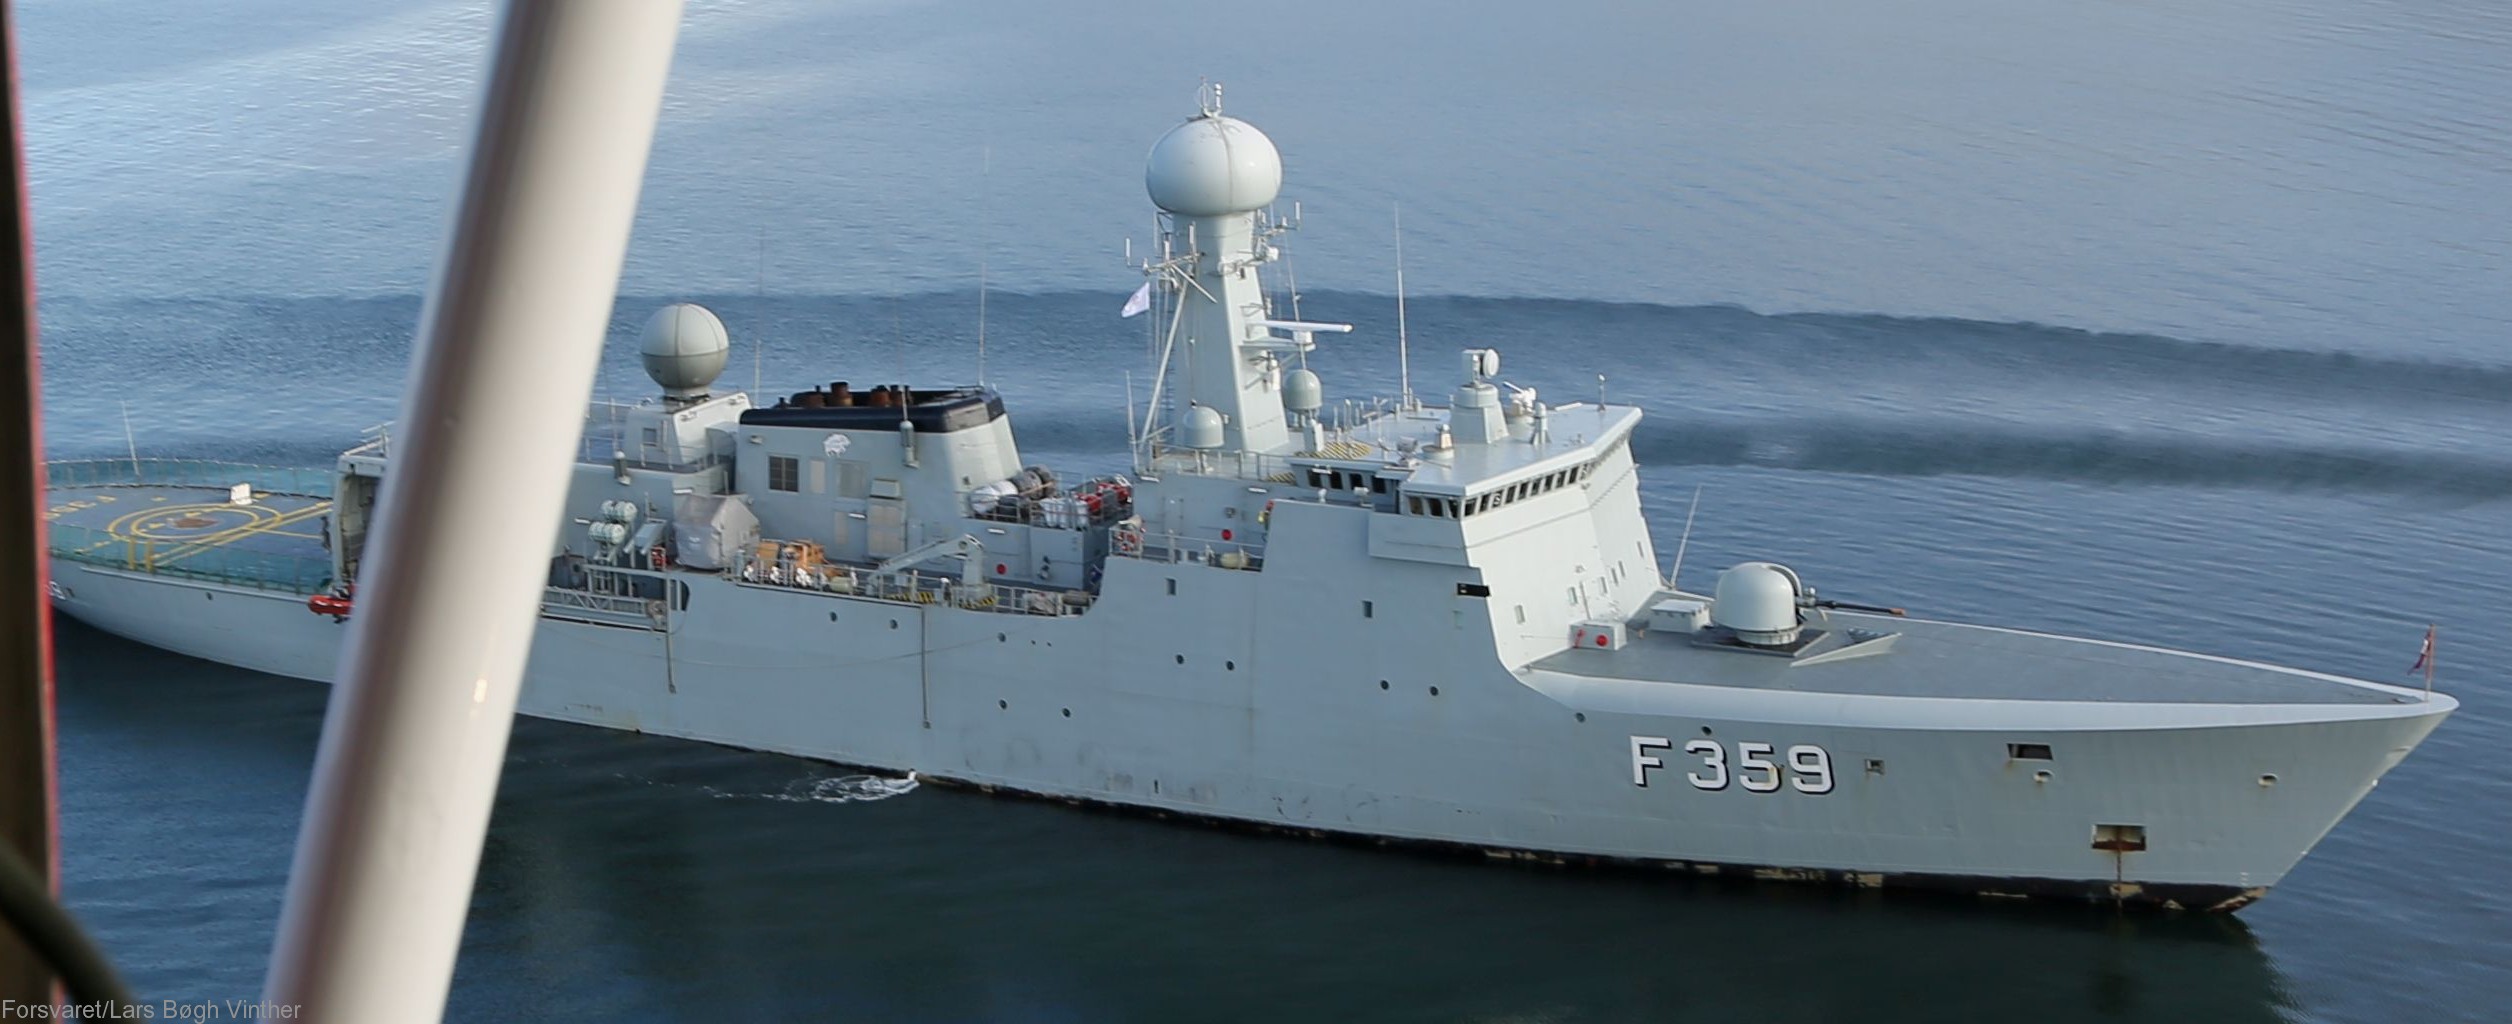 f-359 hdms vaedderen thetis class ocean patrol frigate royal danish navy kongelige danske marine kdm inspektionsskibet 07